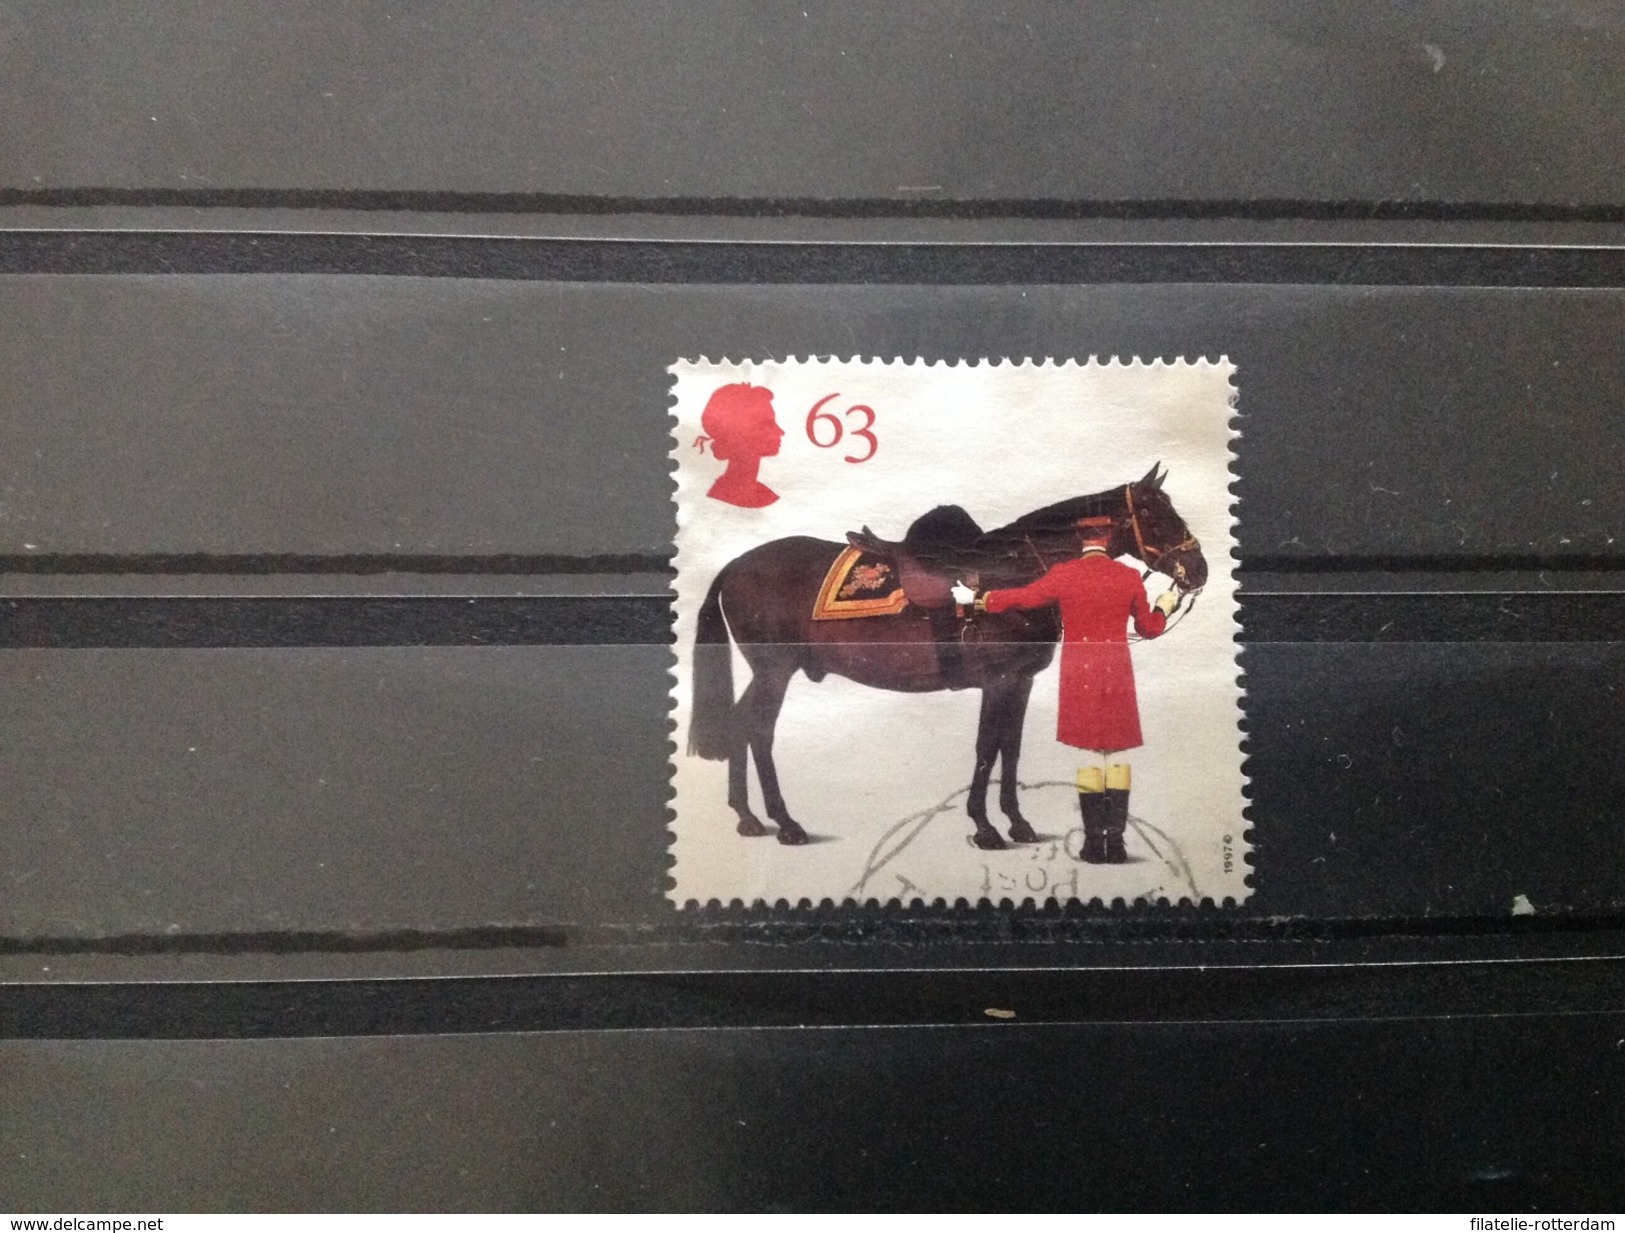 Groot-Brittannië / Great Britain - Paarden Van De Koningin (63) 1997 - Gebruikt